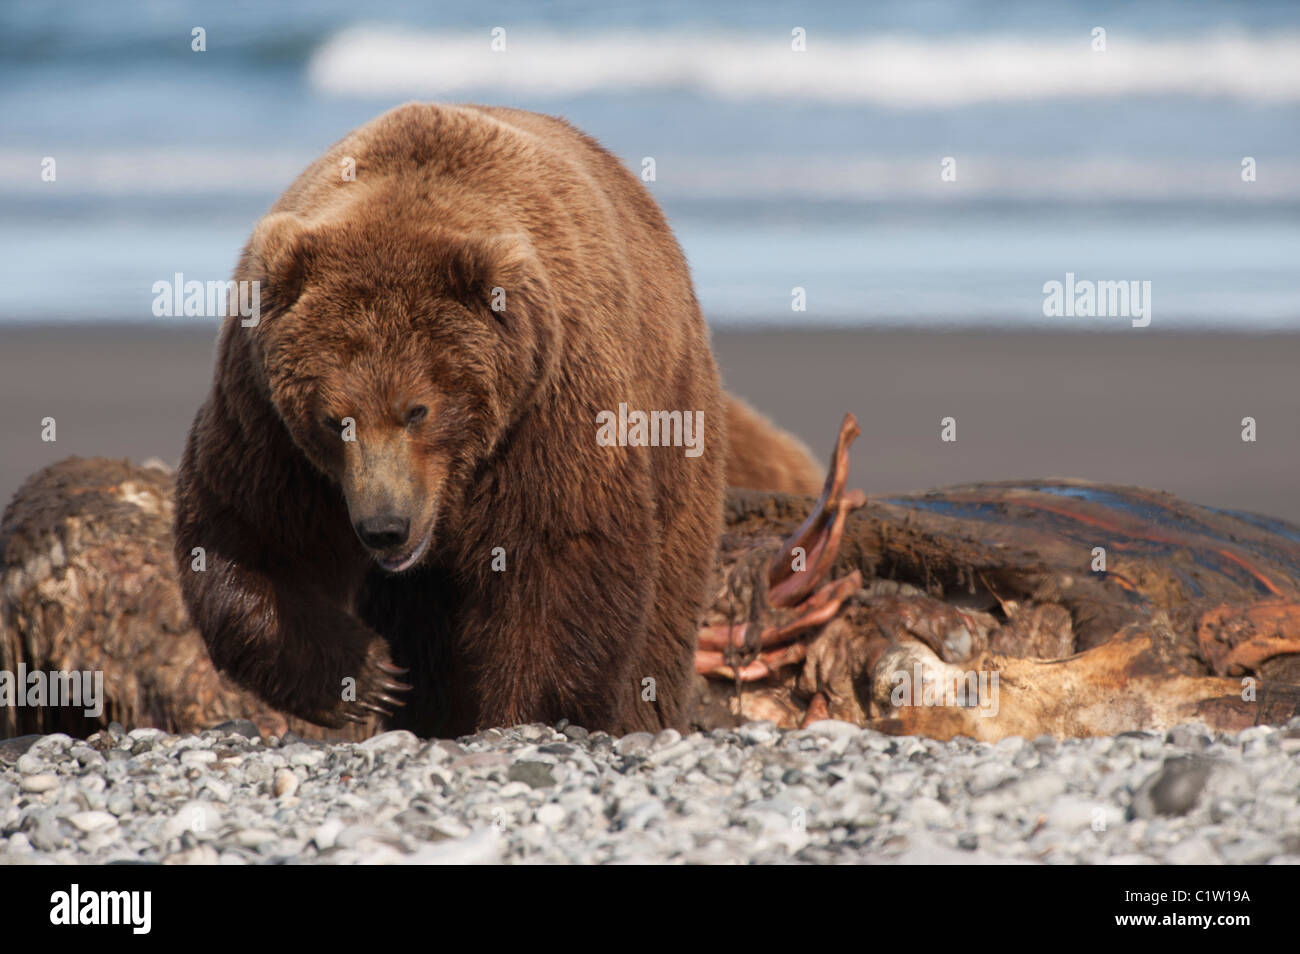 Kodiak brown bear (Ursus arctos middendorffi) at the coast, Swikshak, Katami Coast, Alaska, USA Stock Photo